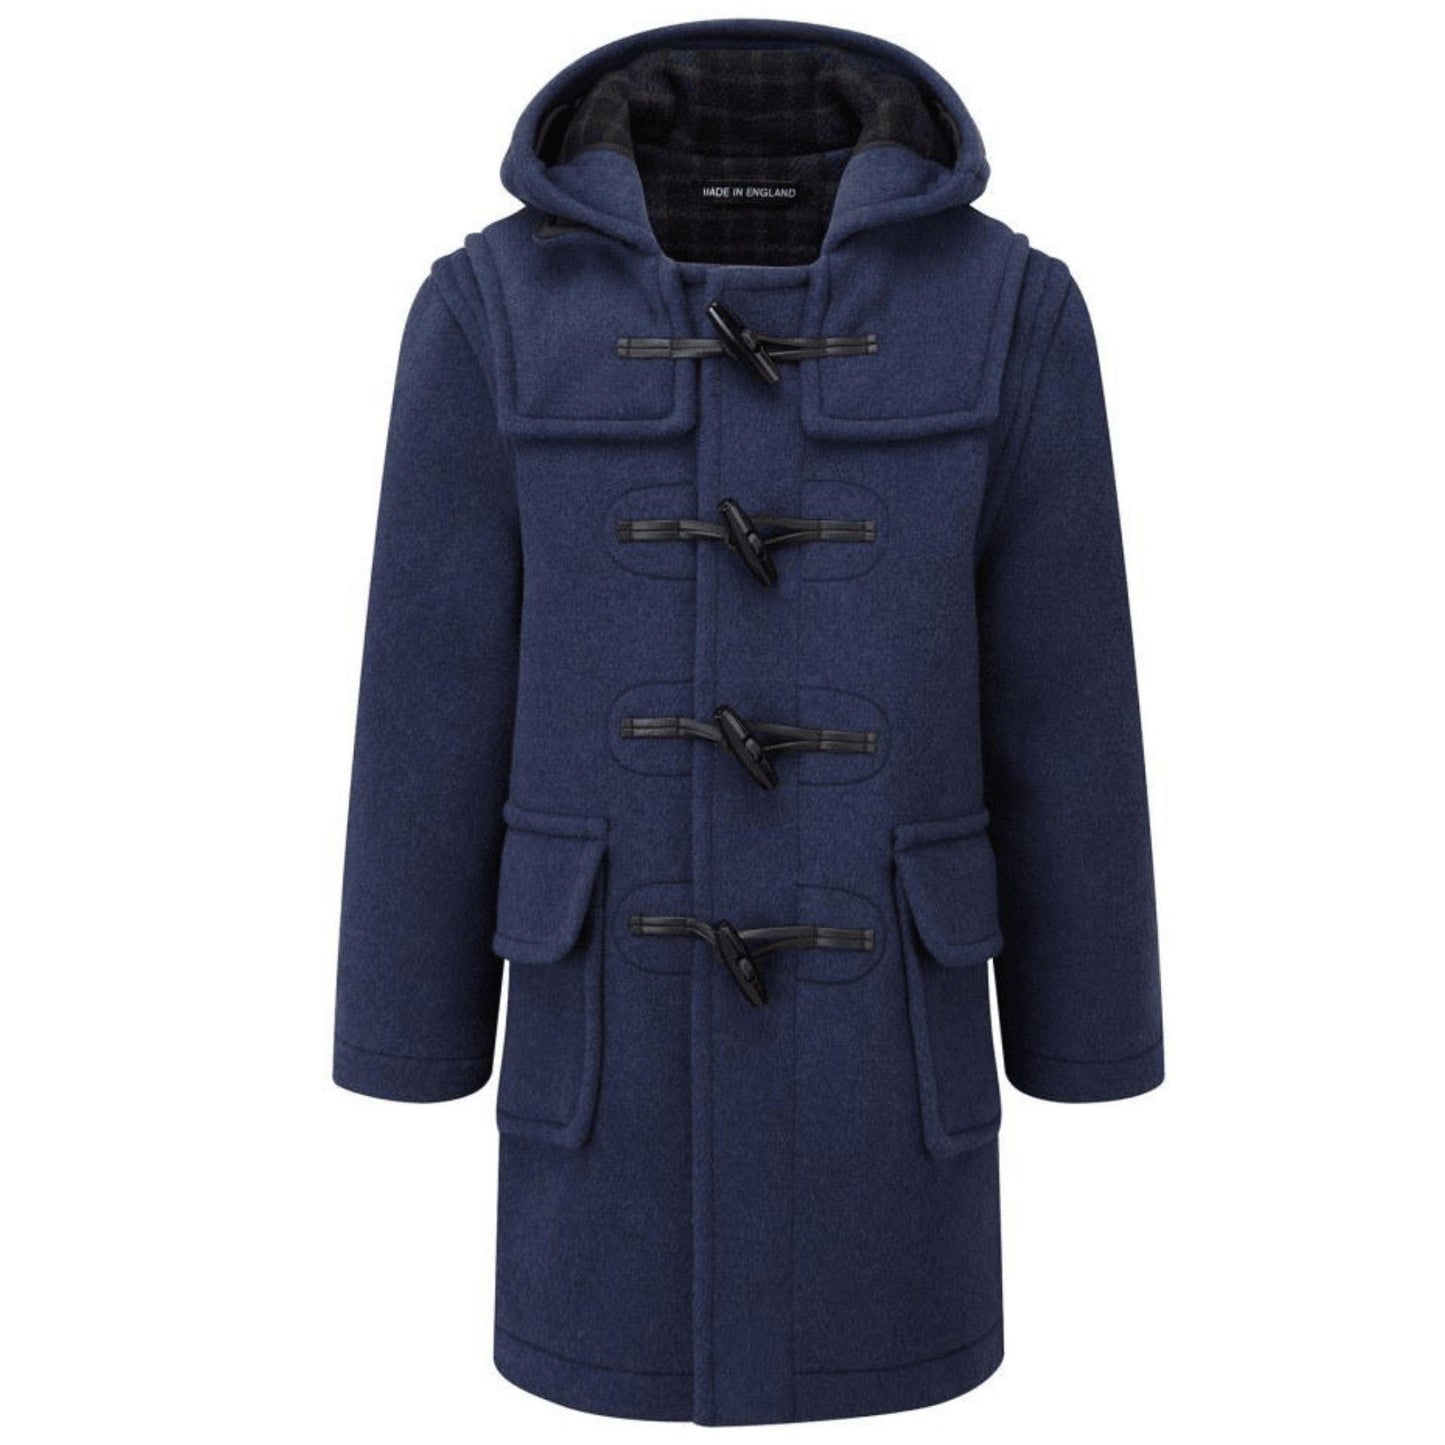 Men's Blue Duffle Coat with Hood